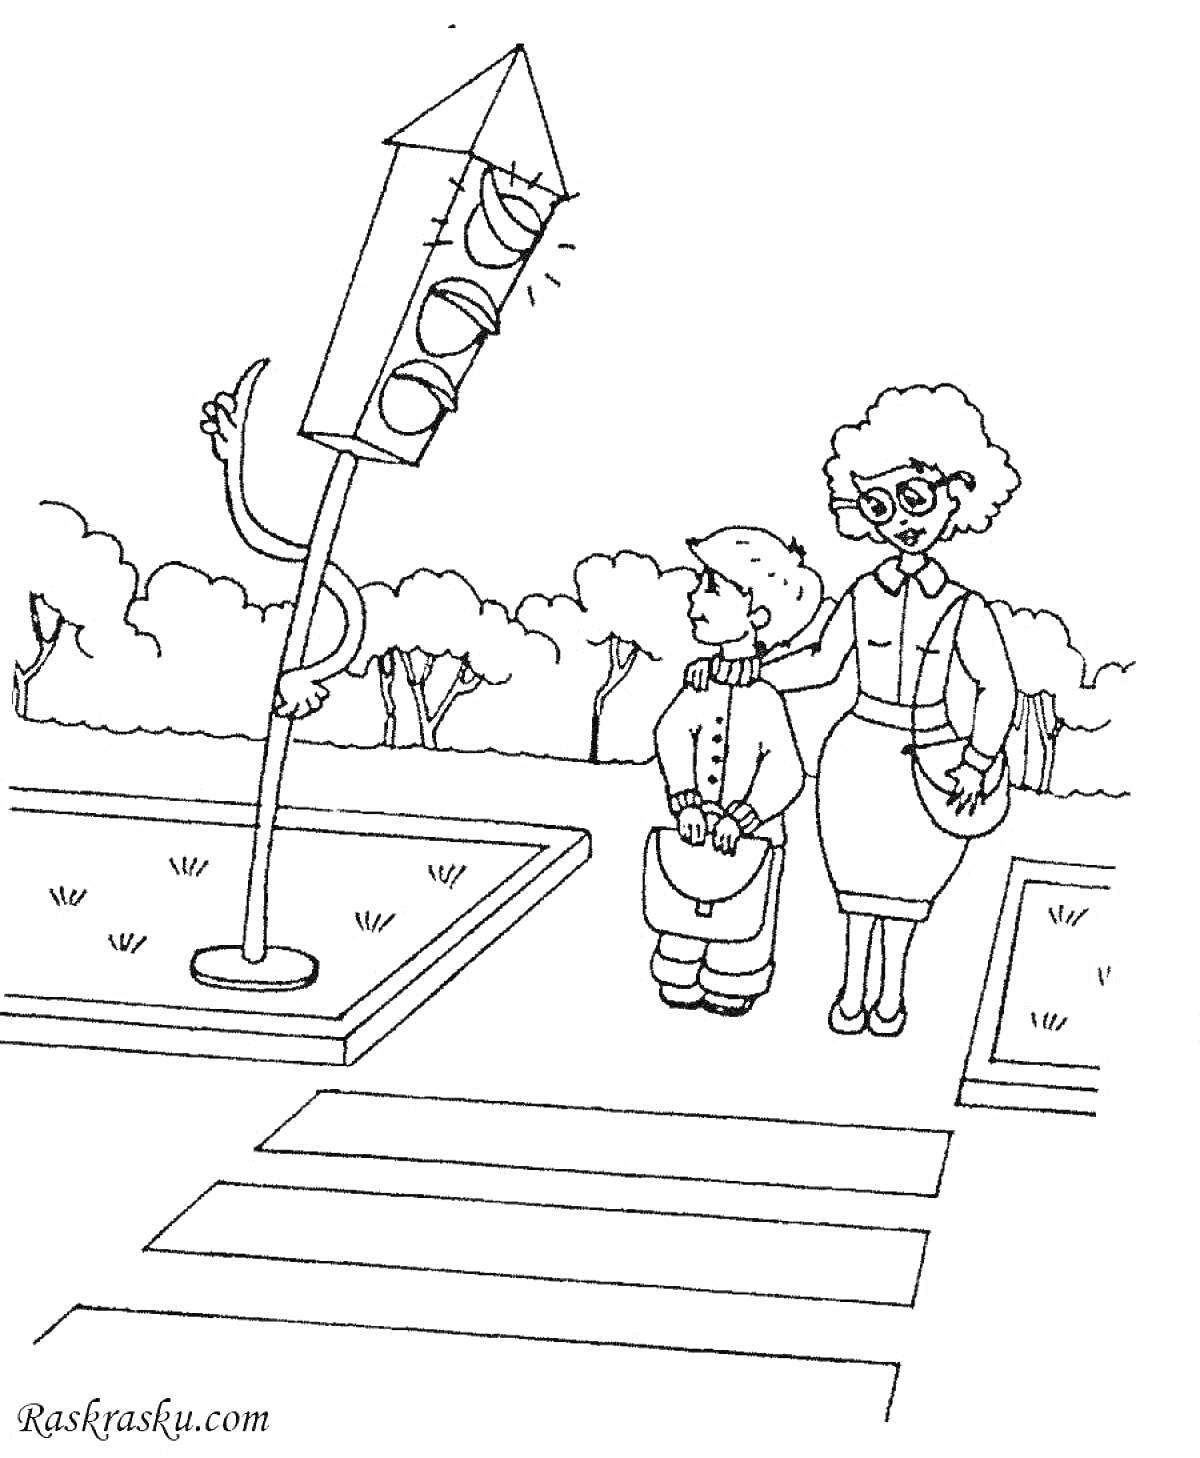 Пожилая женщина и мальчик на пешеходном переходе с жезлом светофора с ручками и ножками.